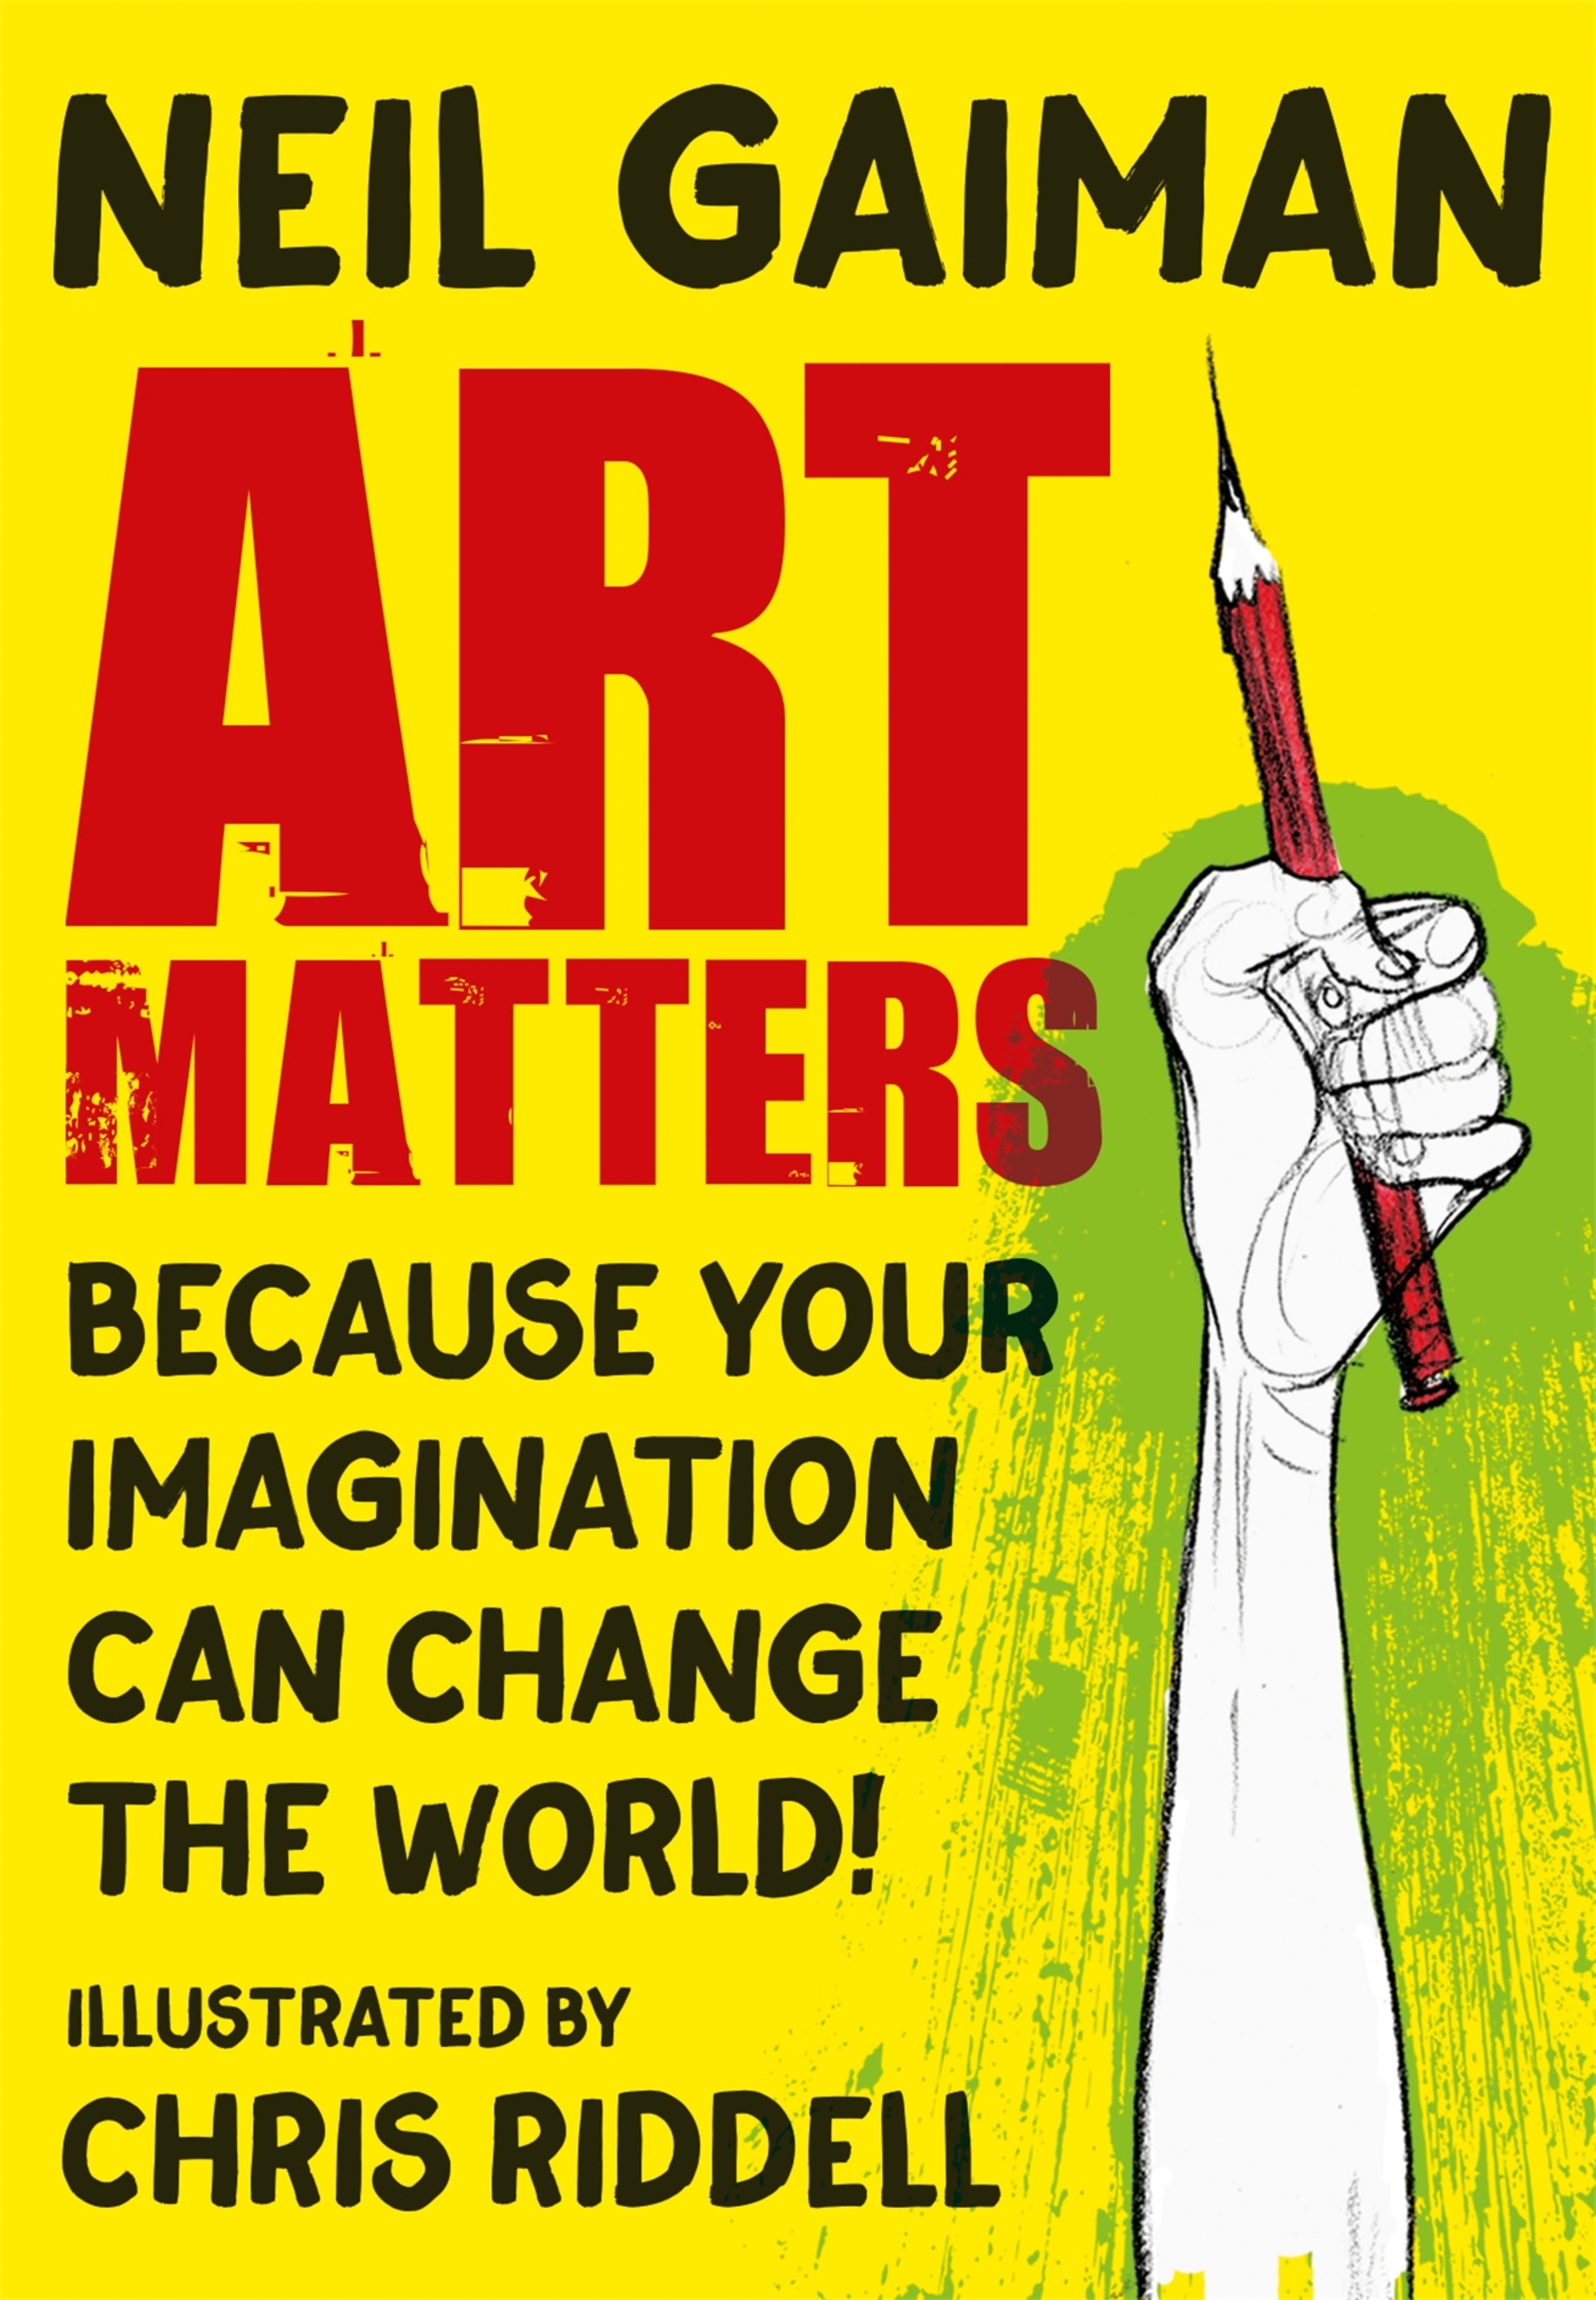 Neil Gaiman, Chris Riddell: Art Matters (2021, Headline Publishing Group)